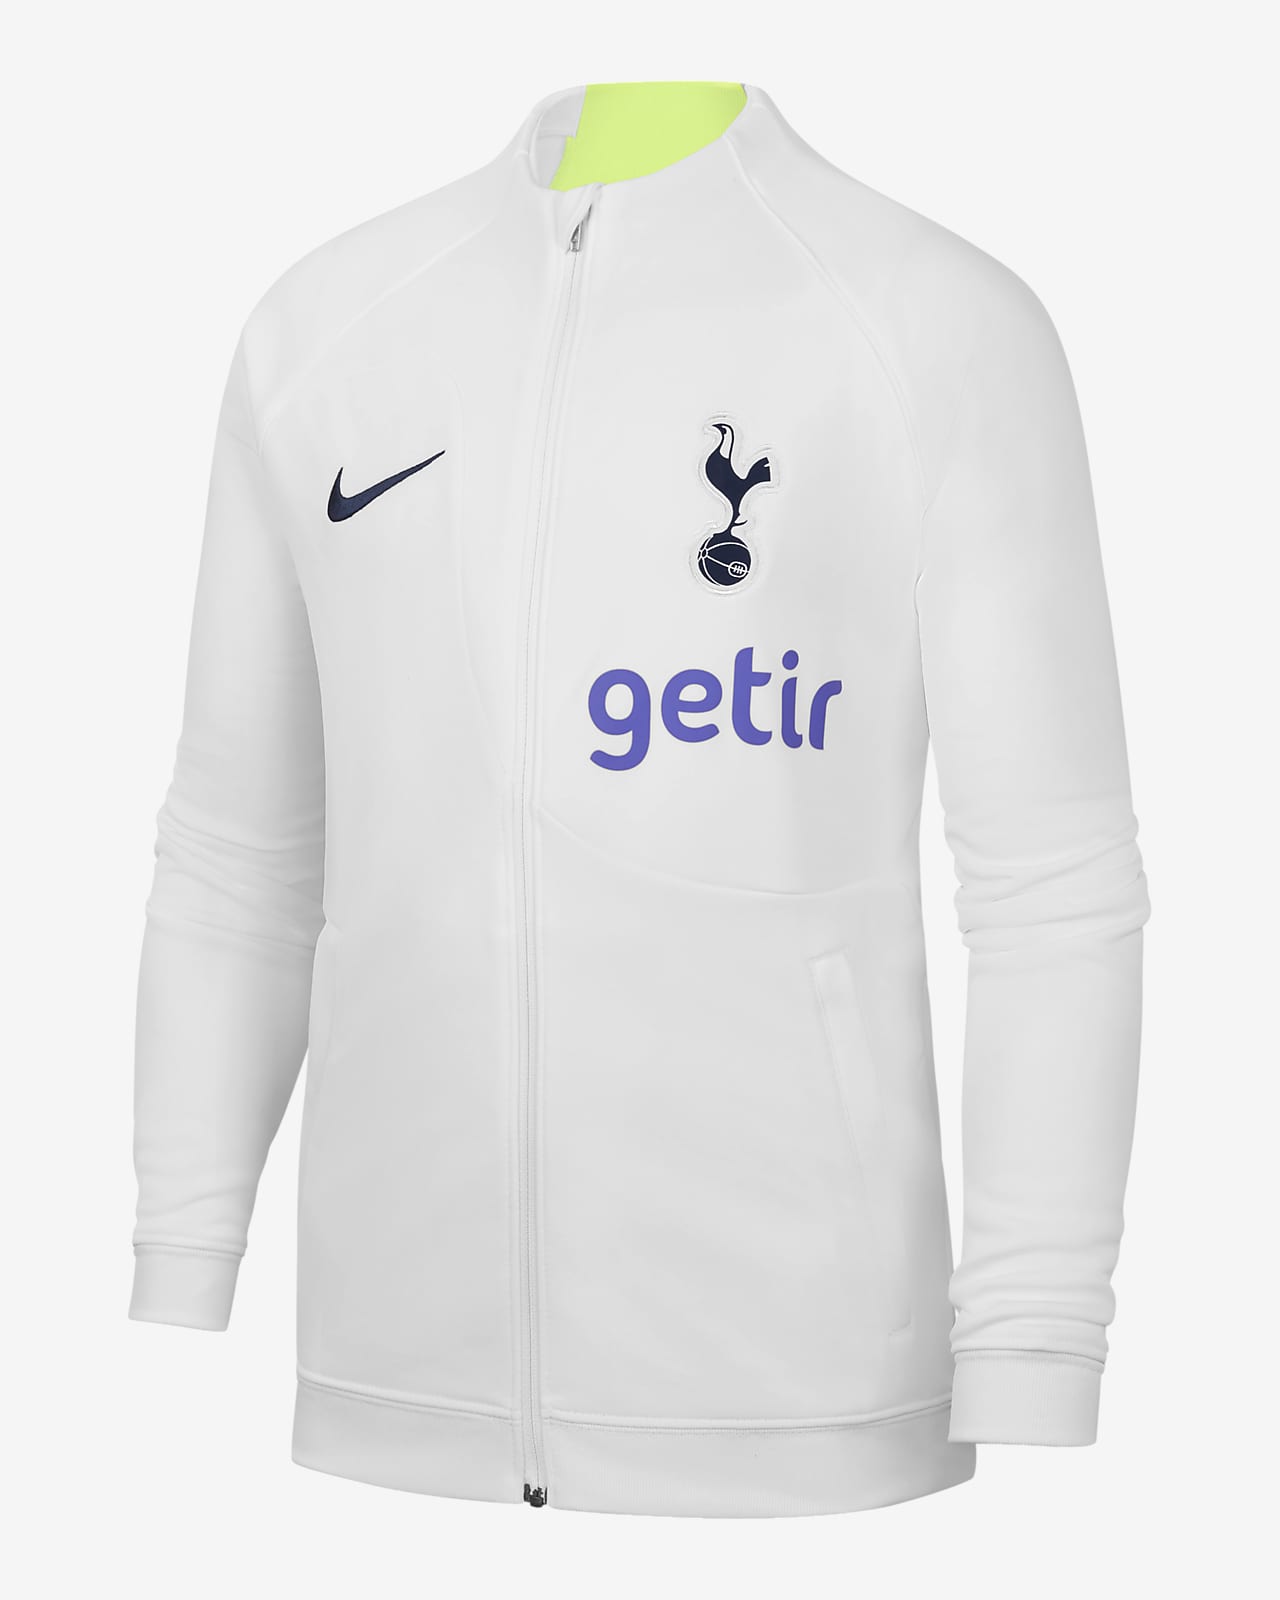 Tottenham Hotspur Academy Pro Older Kids' Nike Football Jacket. Nike LU